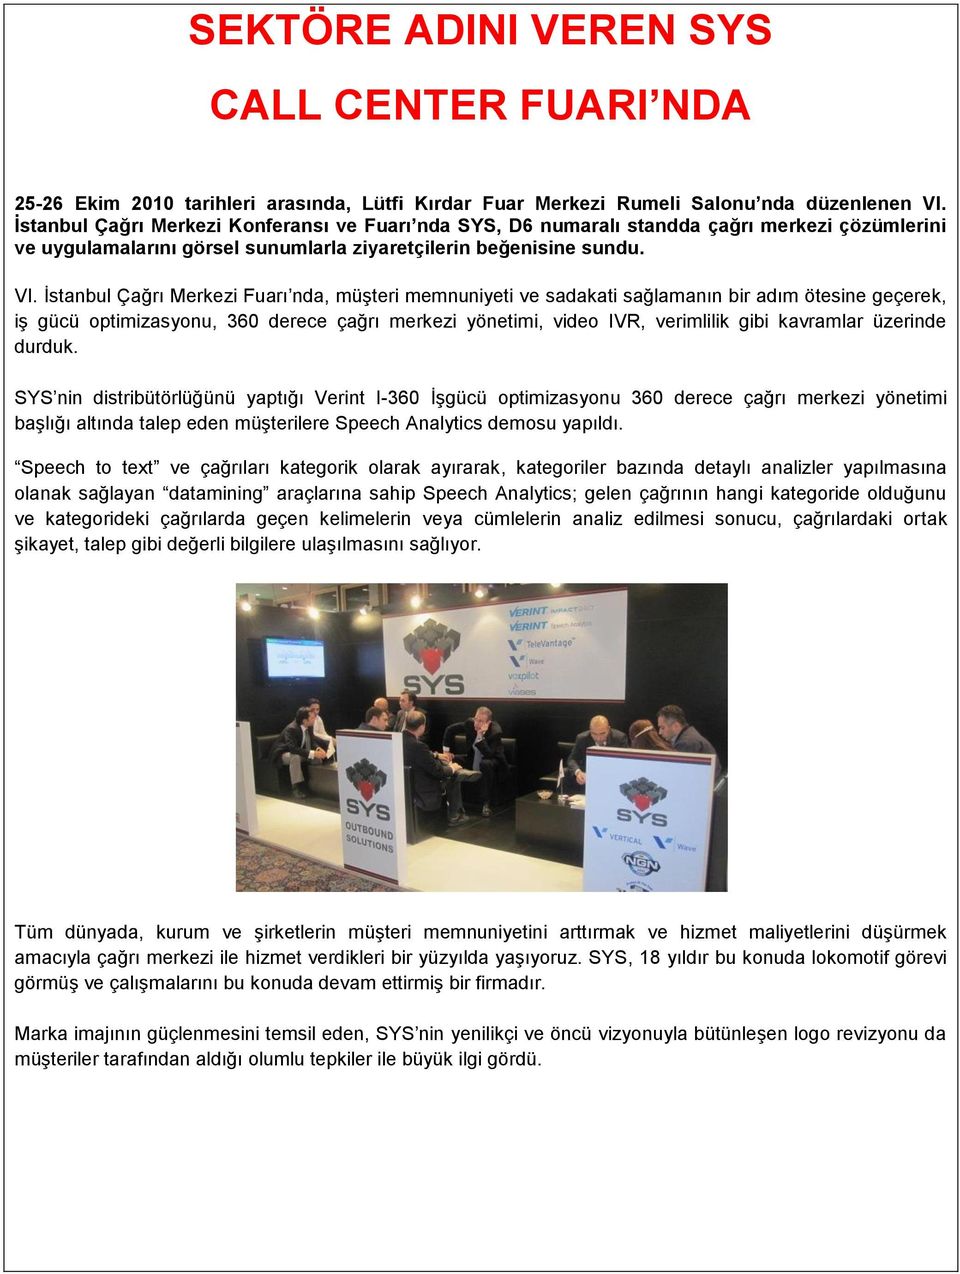 İstanbul Çağrı Merkezi Fuarı nda, müşteri memnuniyeti ve sadakati sağlamanın bir adım ötesine geçerek, iş gücü optimizasyonu, 360 derece çağrı merkezi yönetimi, video IVR, verimlilik gibi kavramlar